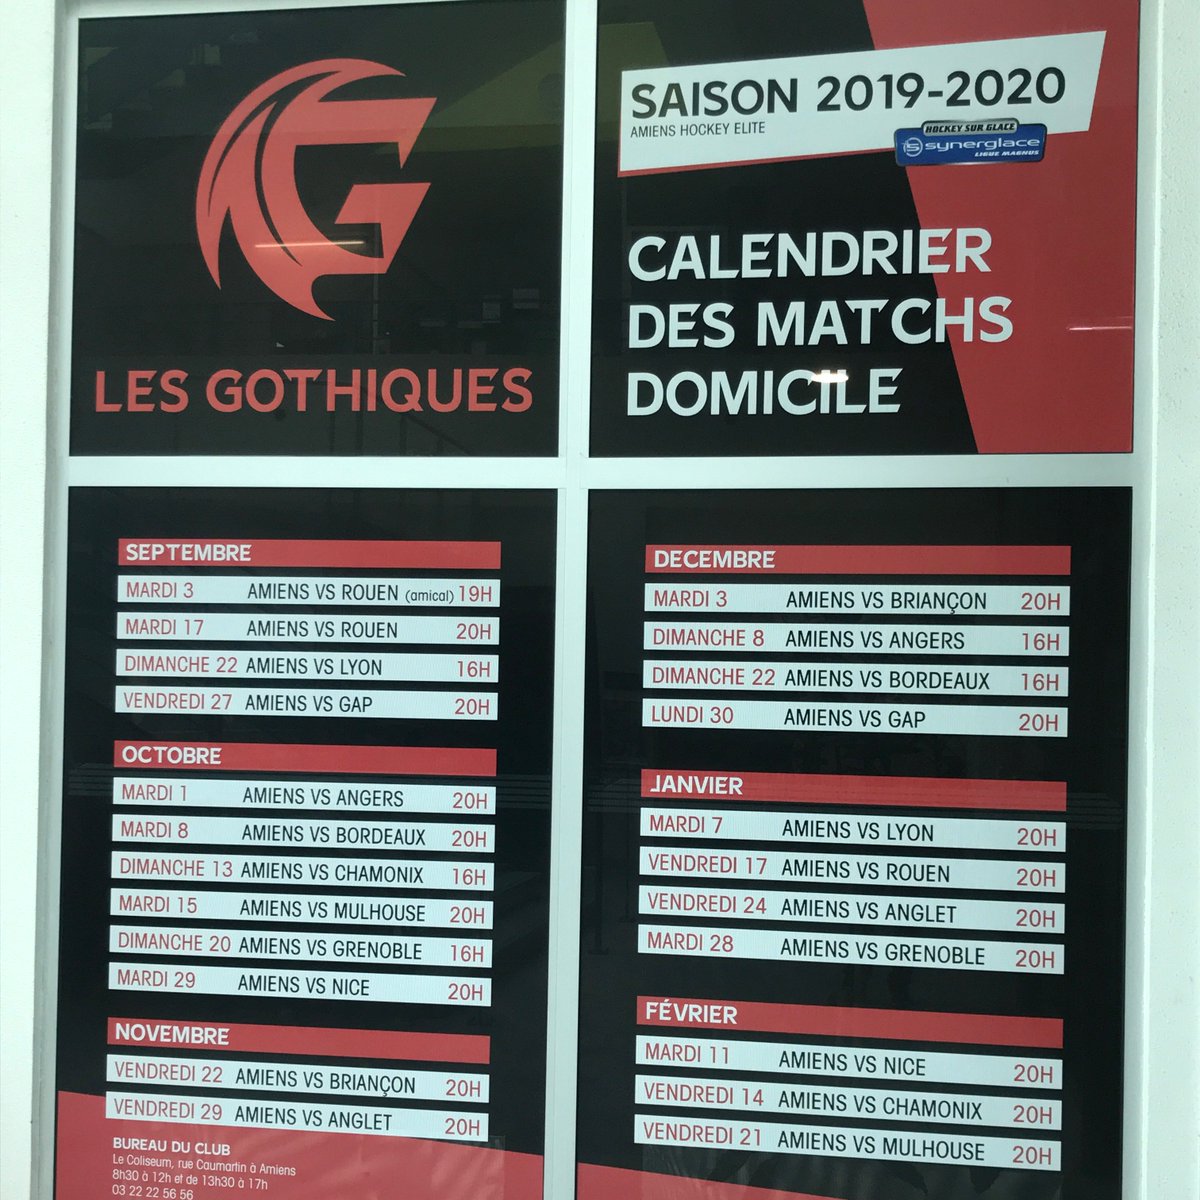 || AFFICHAGE ||
Le nouveau calendrier s’affiche ! 
#wearegothiques #saison1920